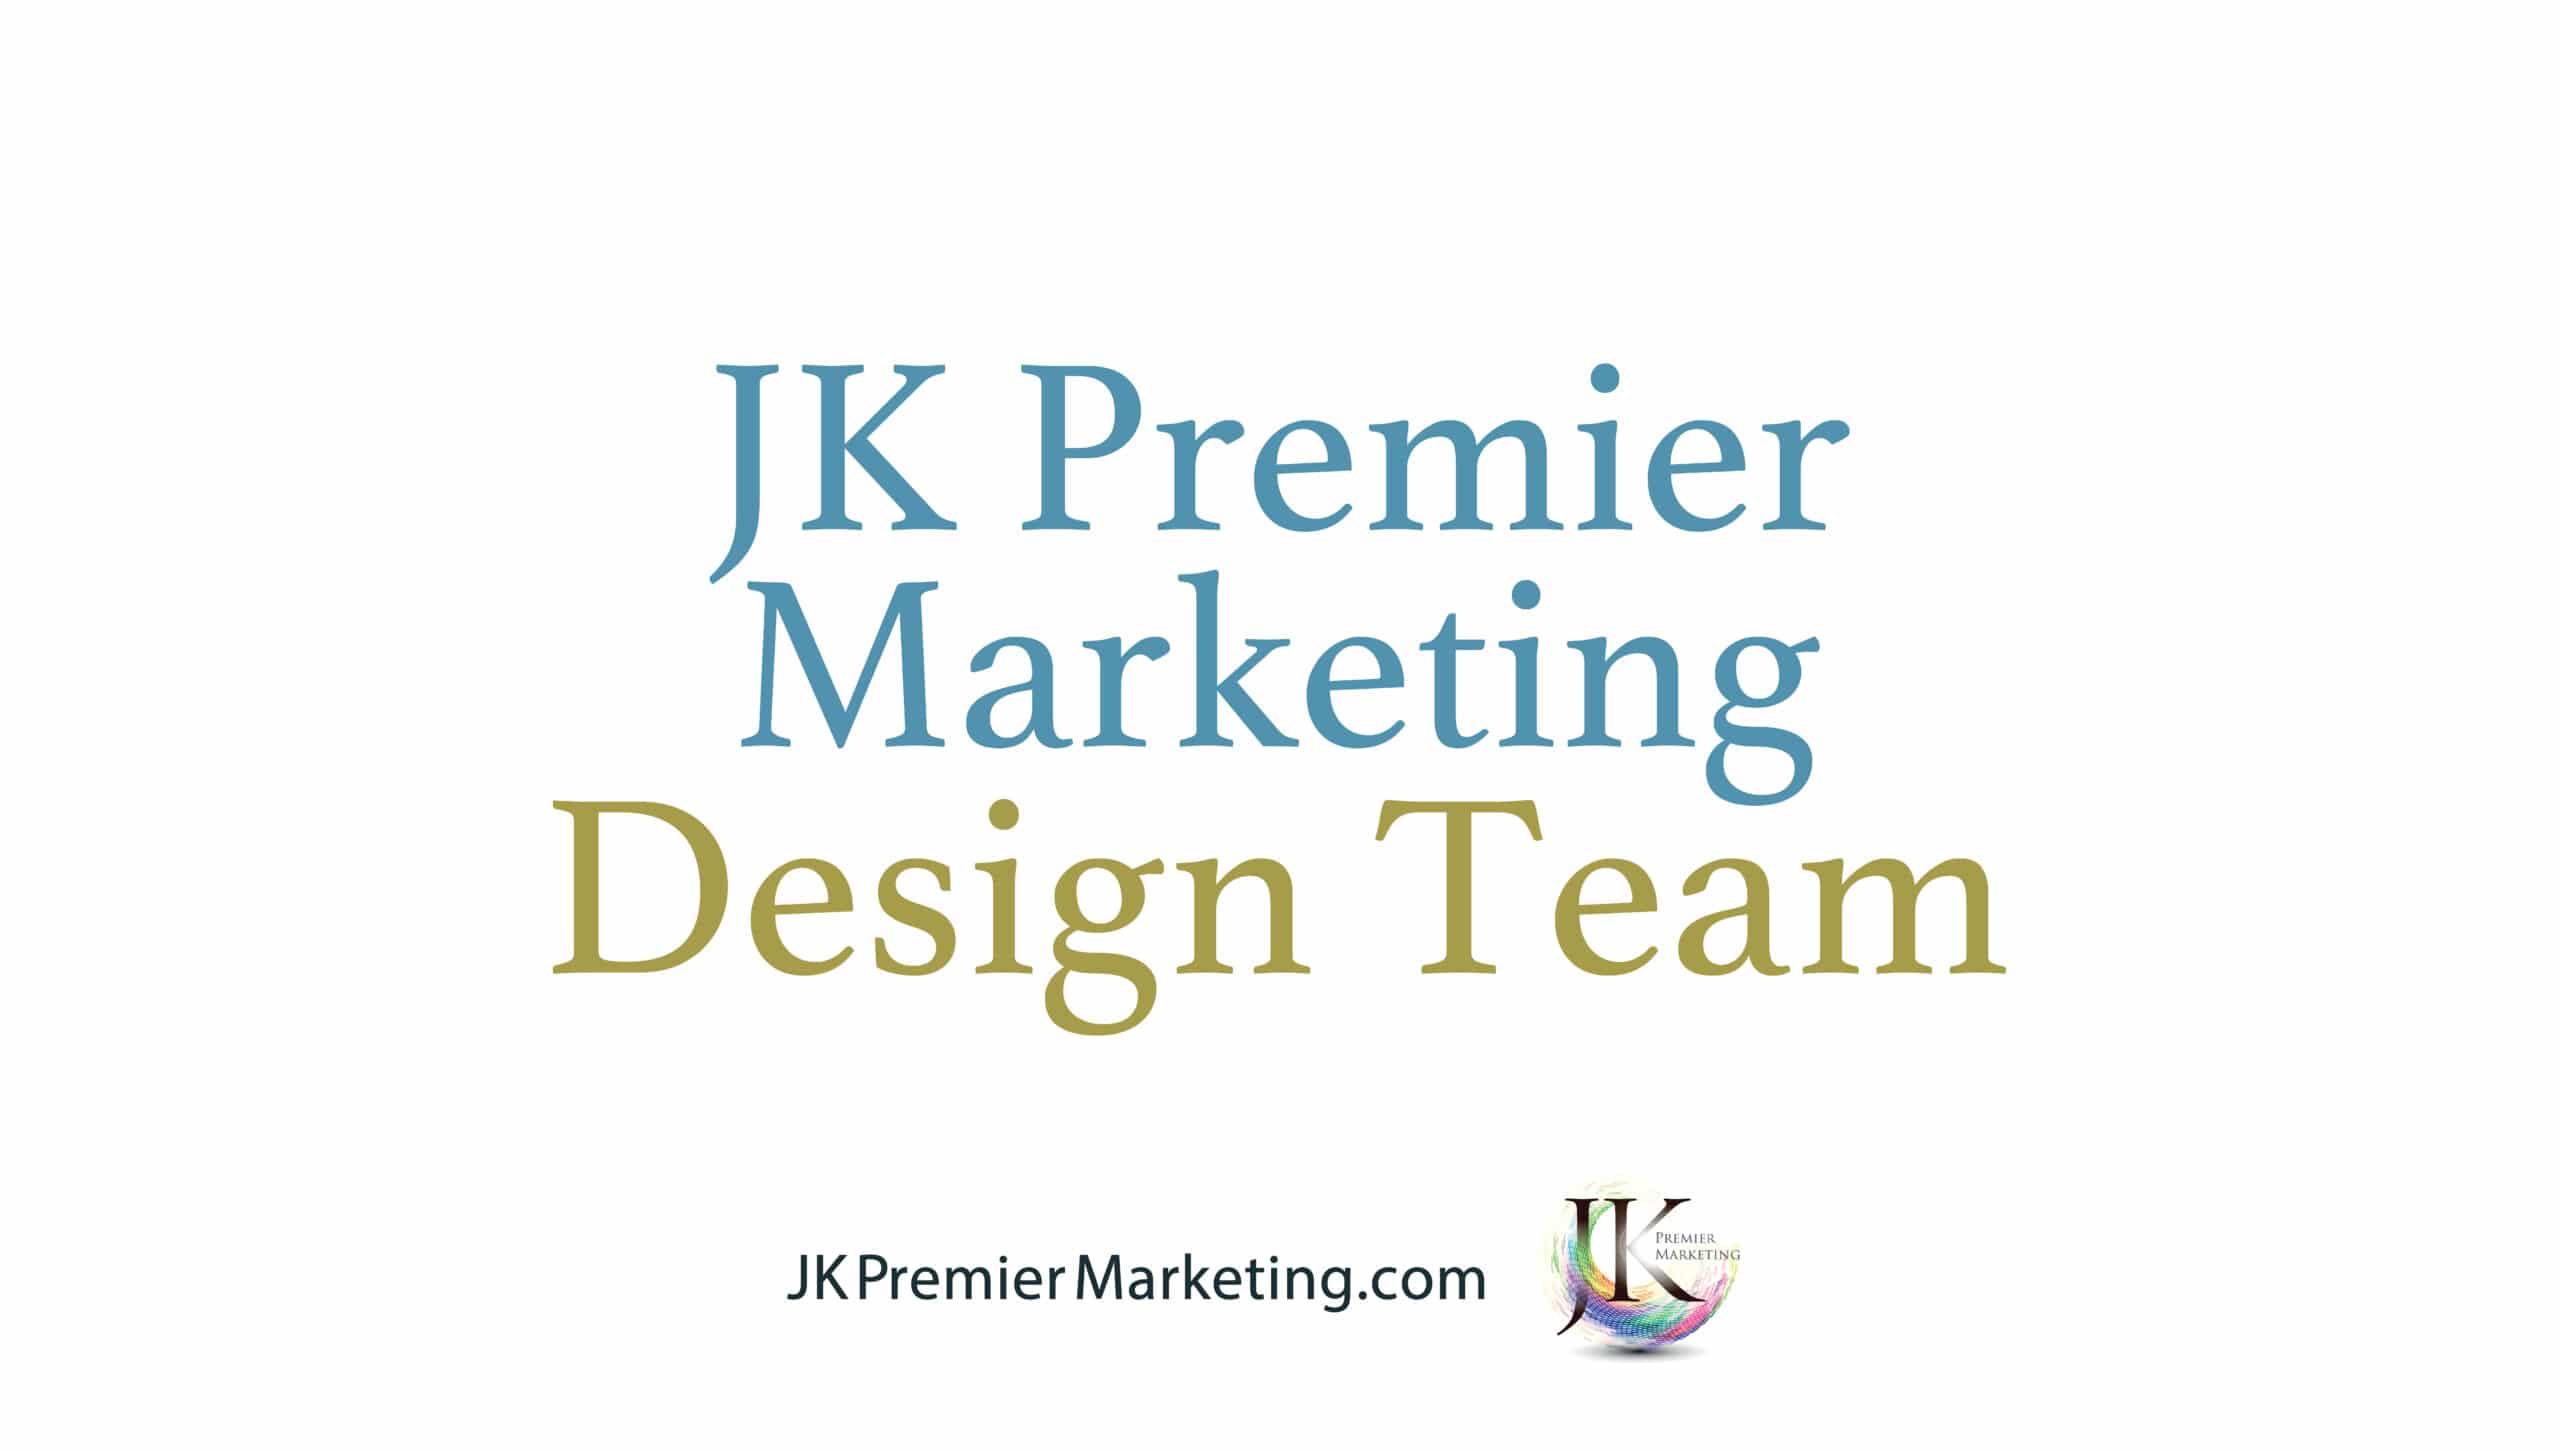 Design Team Membership